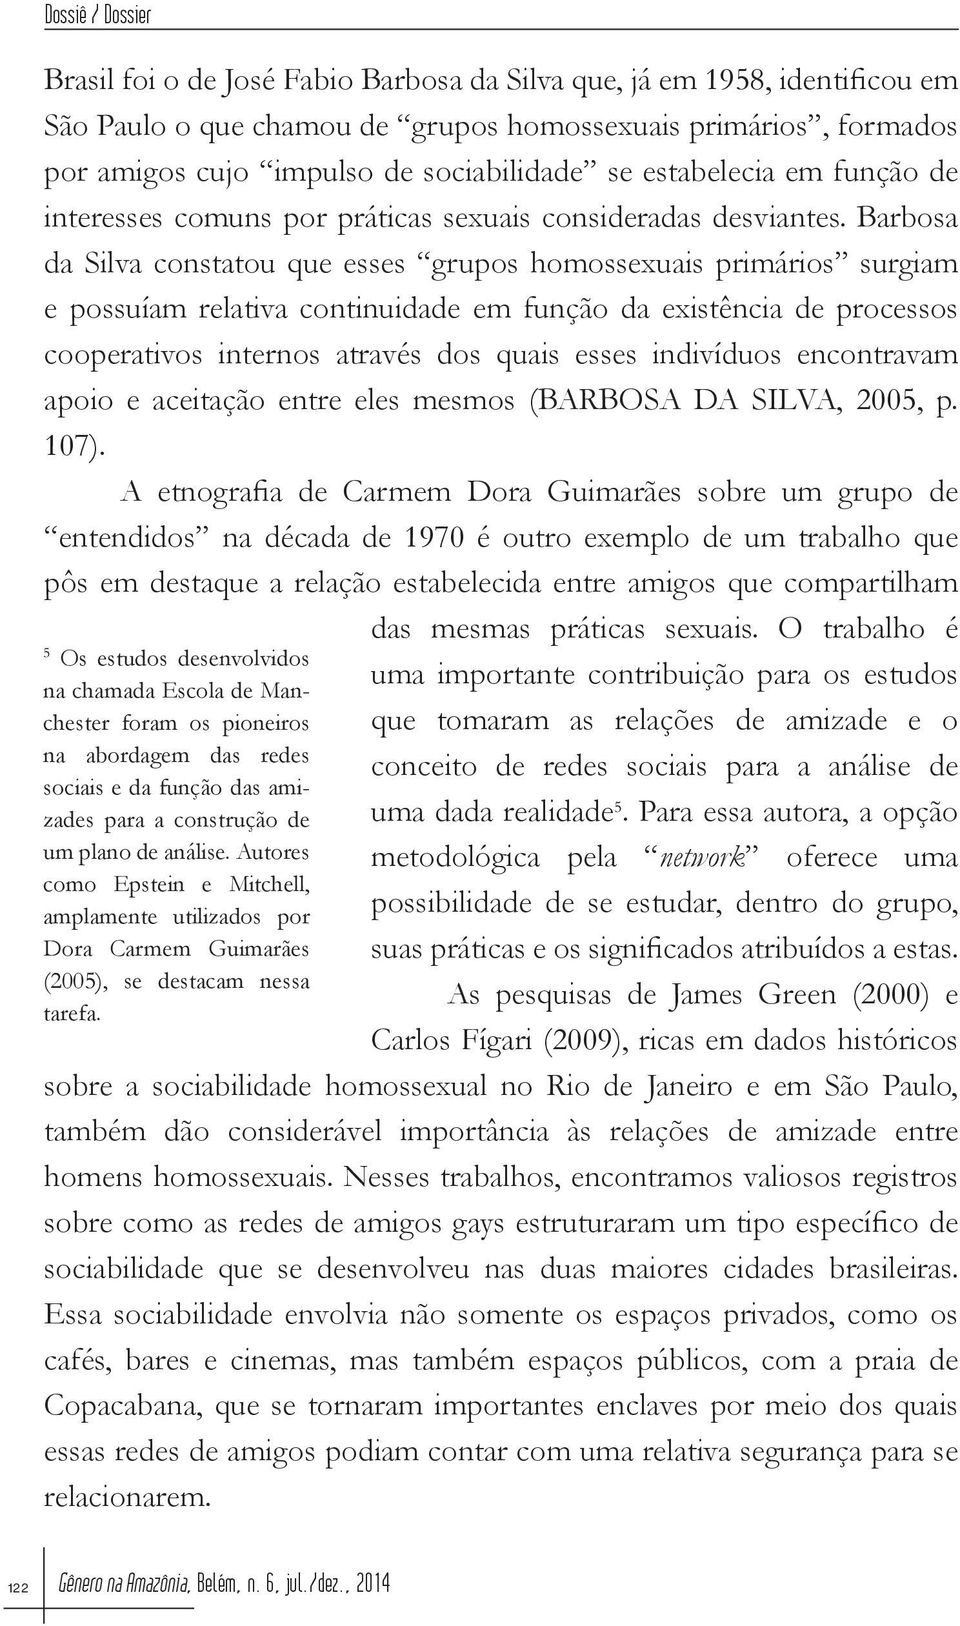 Barbosa da Silva constatou que esses grupos homossexuais primários surgiam e possuíam relativa continuidade em função da existência de processos cooperativos internos através dos quais esses